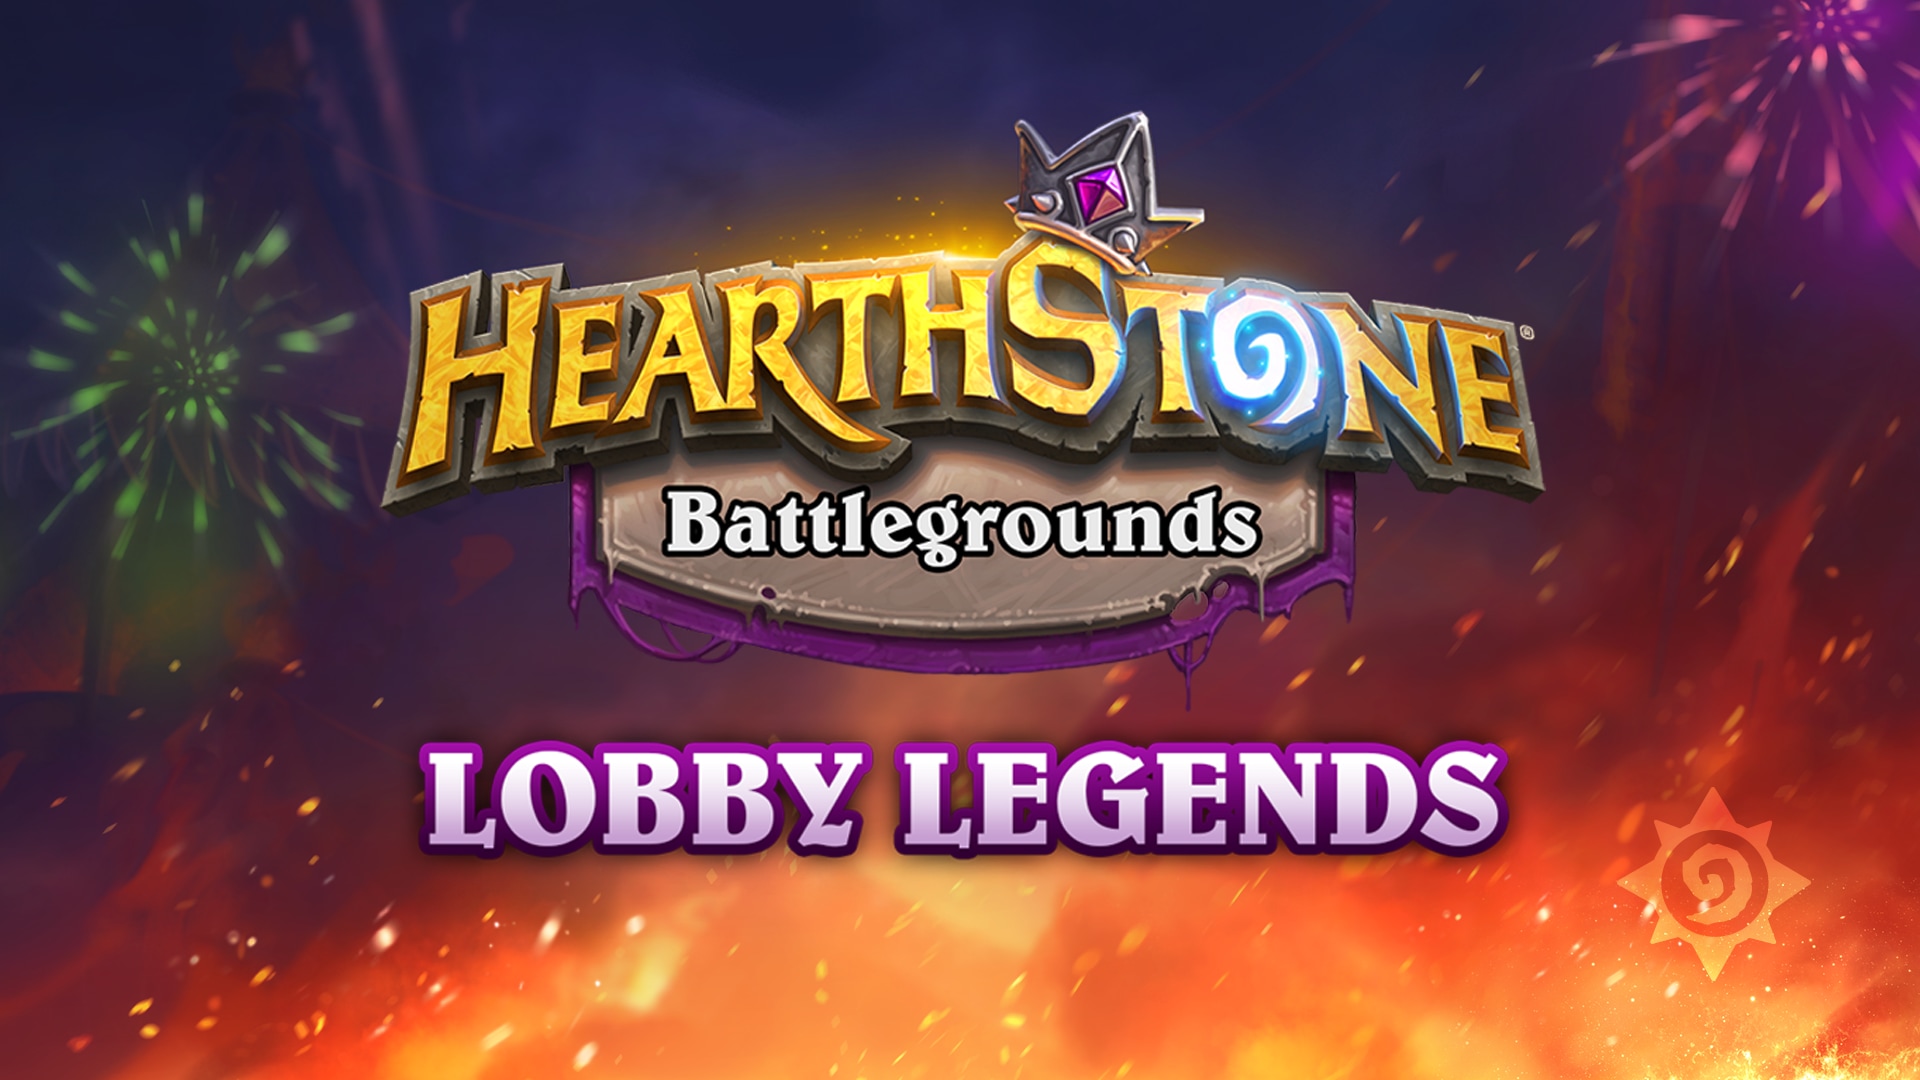 Schlachtfeld: Lobby Legends feiert das Sonnenwendfest!